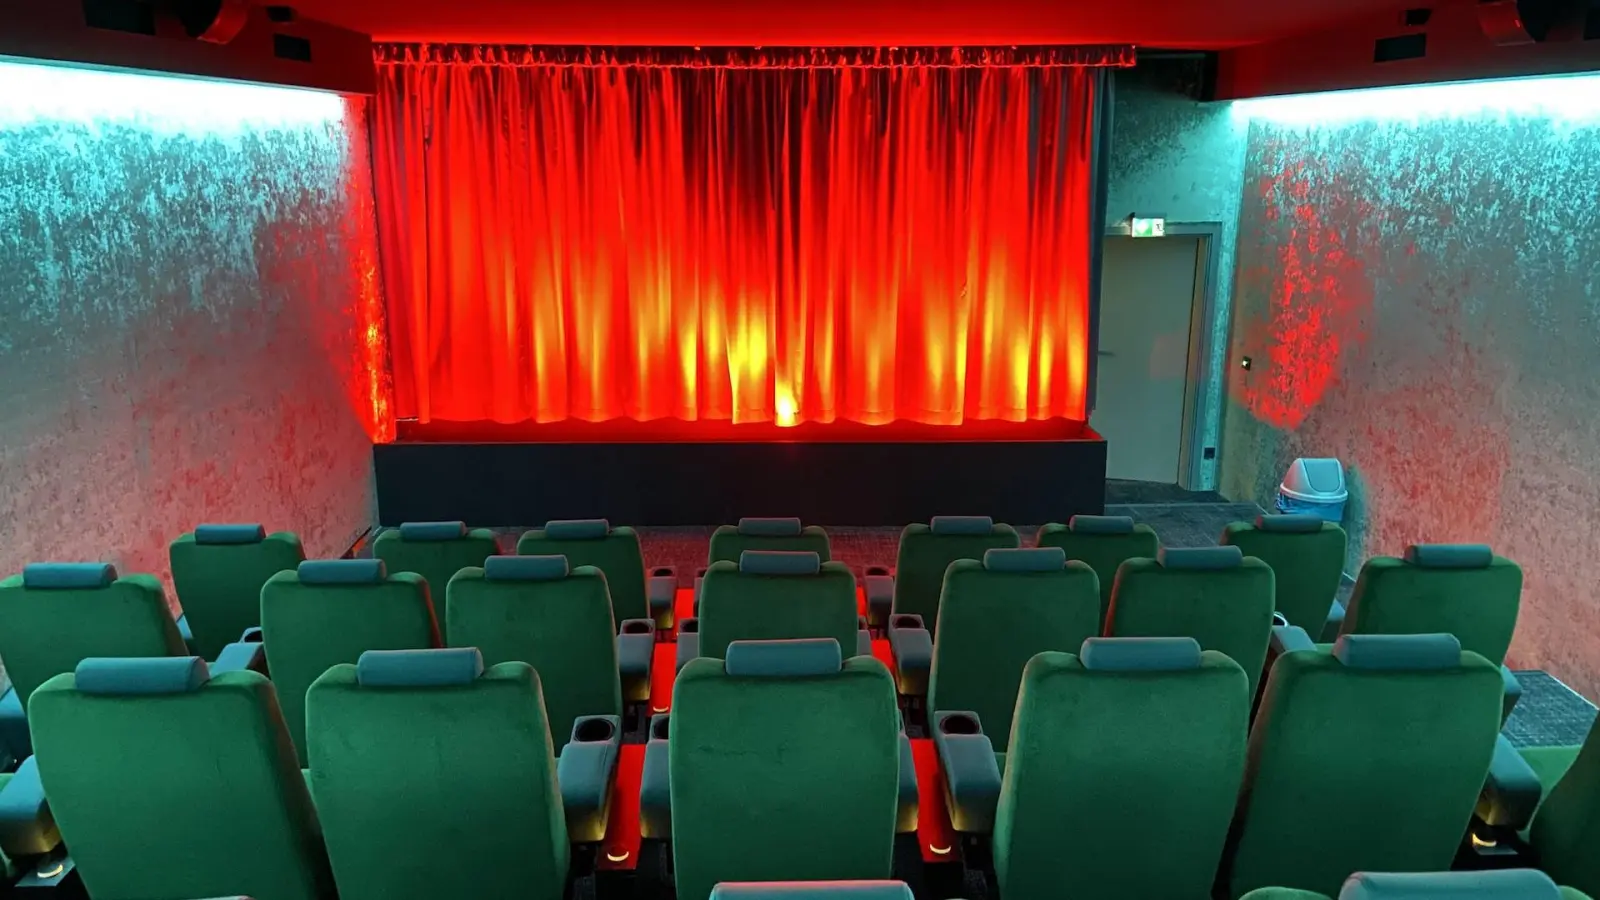 Auch im Saal 2 des Kinos Taucha wird es einen “Frauentagsfilm” zu sehen geben. (Foto: taucha-kompakt.de)